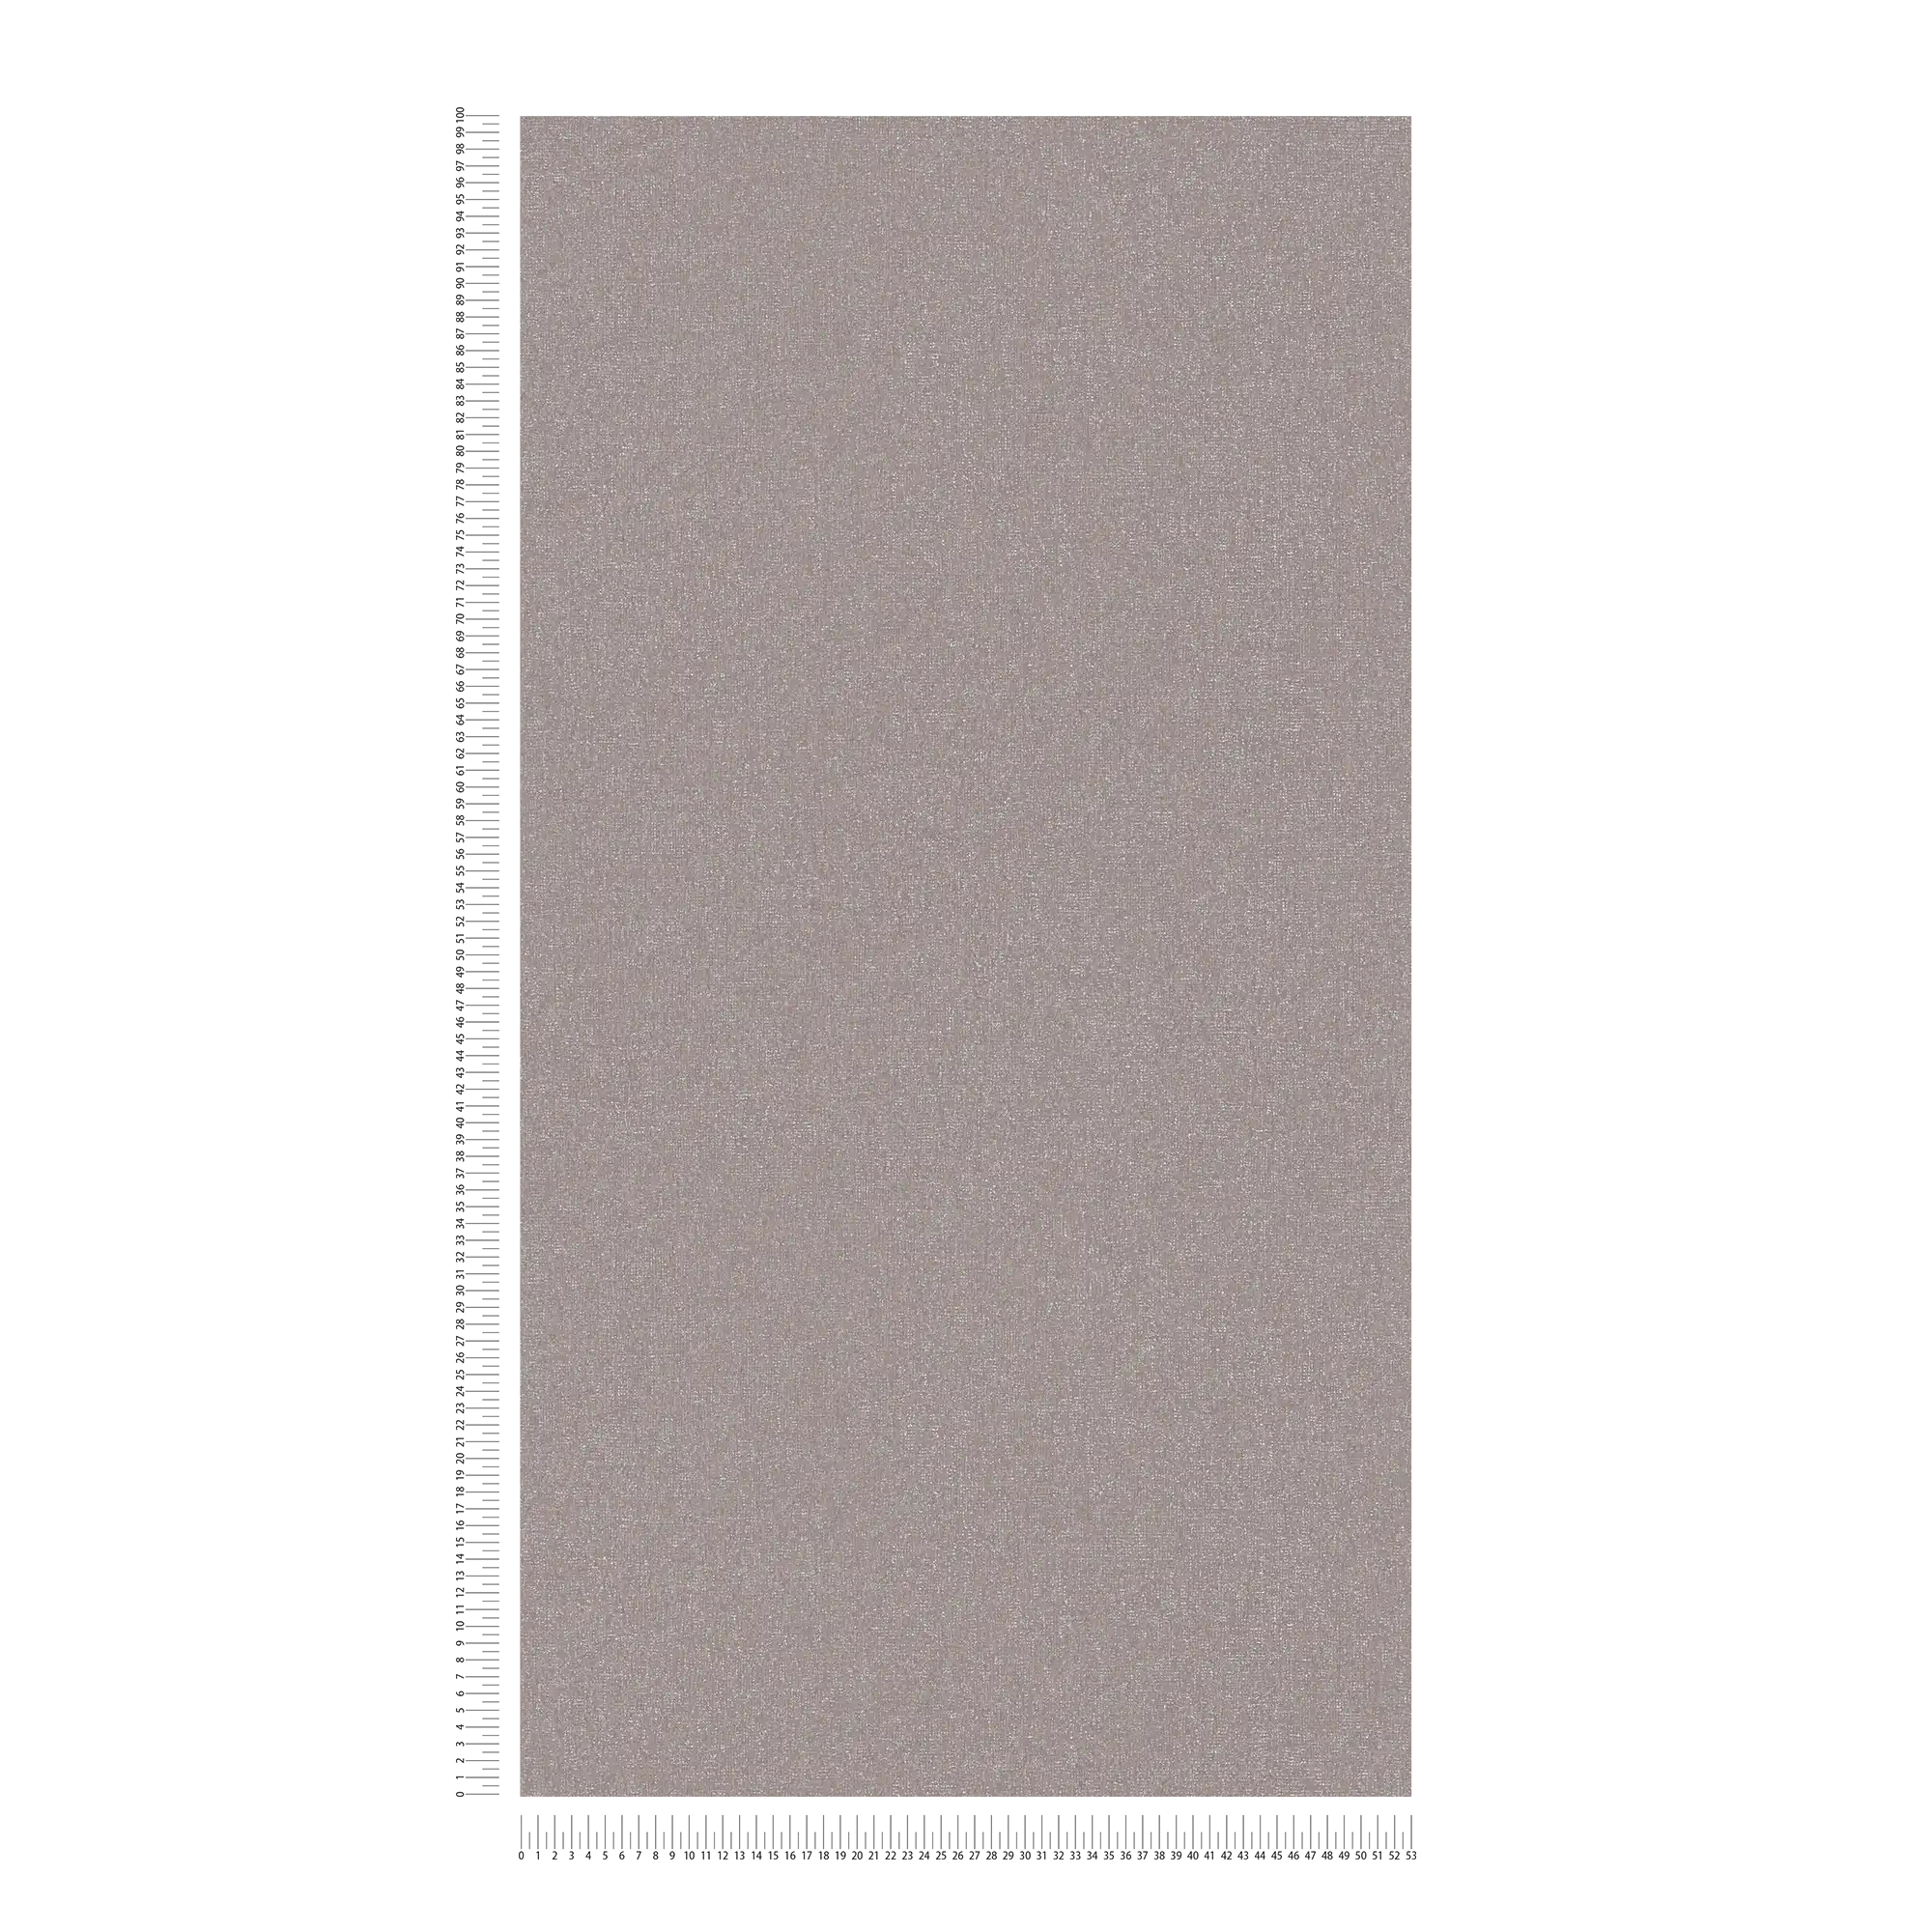             Carta da parati in tessuto non tessuto a struttura fine - grigio, , marrone
        